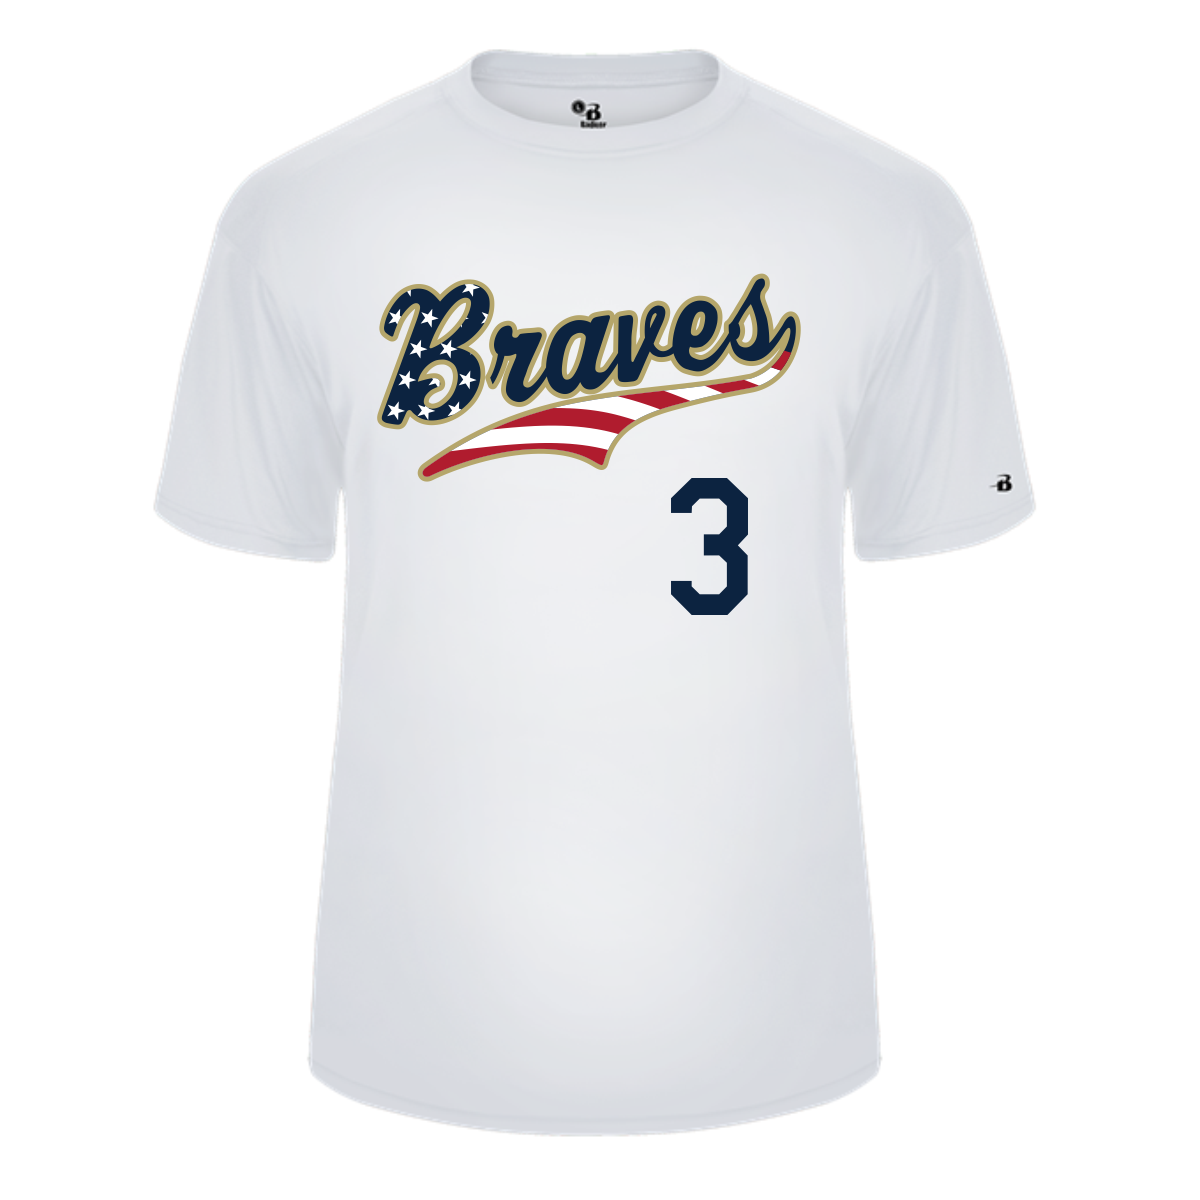 Badger Braves Baseball White USA Player Jersey